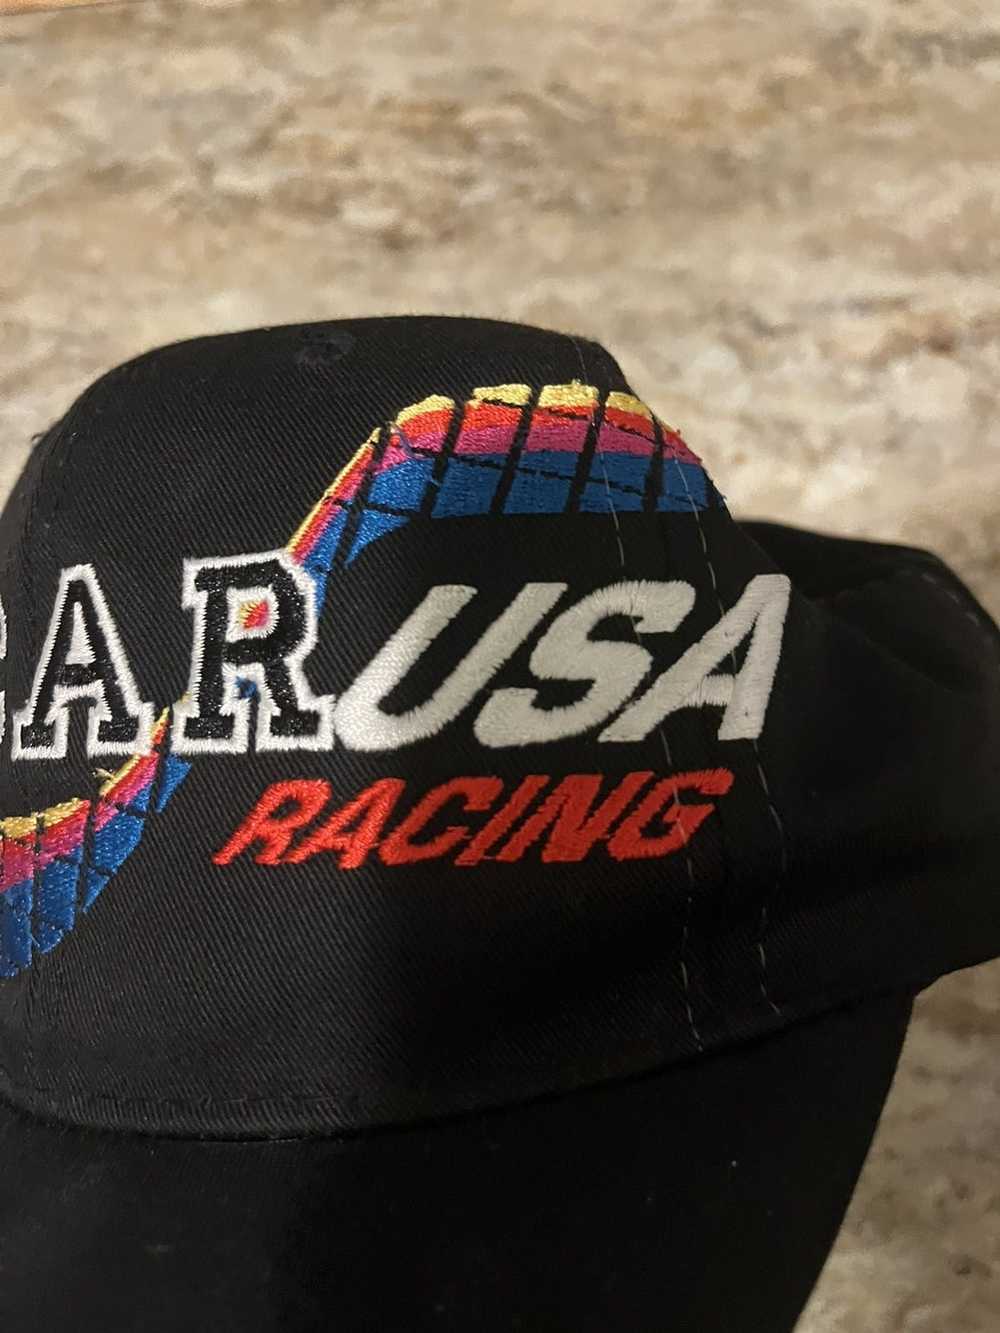 NASCAR × Vintage NASCAR racing SnapBack hat - image 2